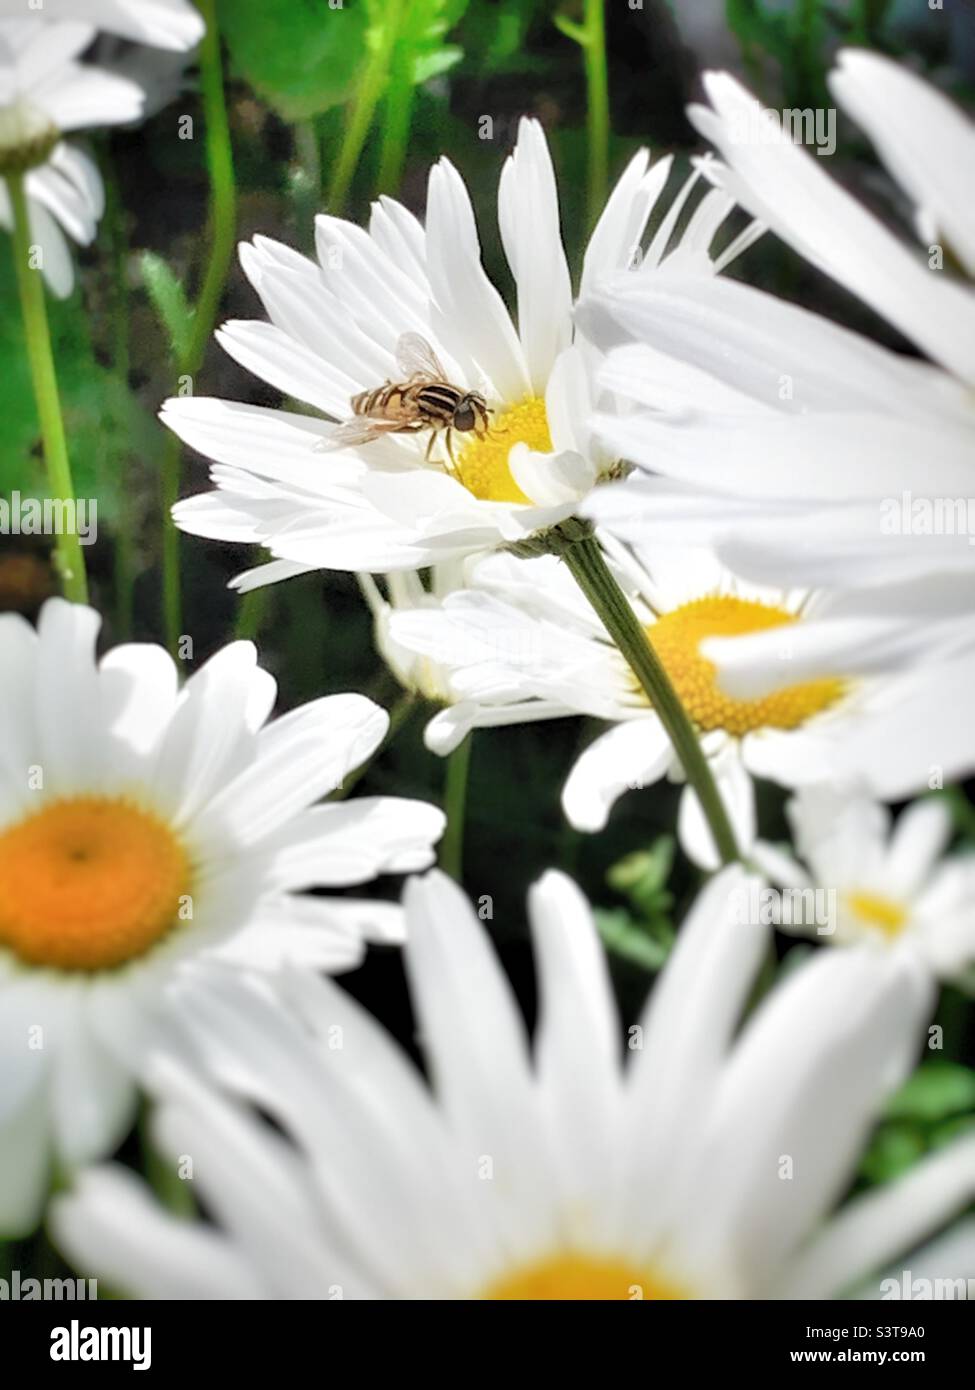 Sunfly en Ox Eye Daisy, margaritas blancas y amarillas con tallos verdes y moscas amarillas y negras. Foto de stock